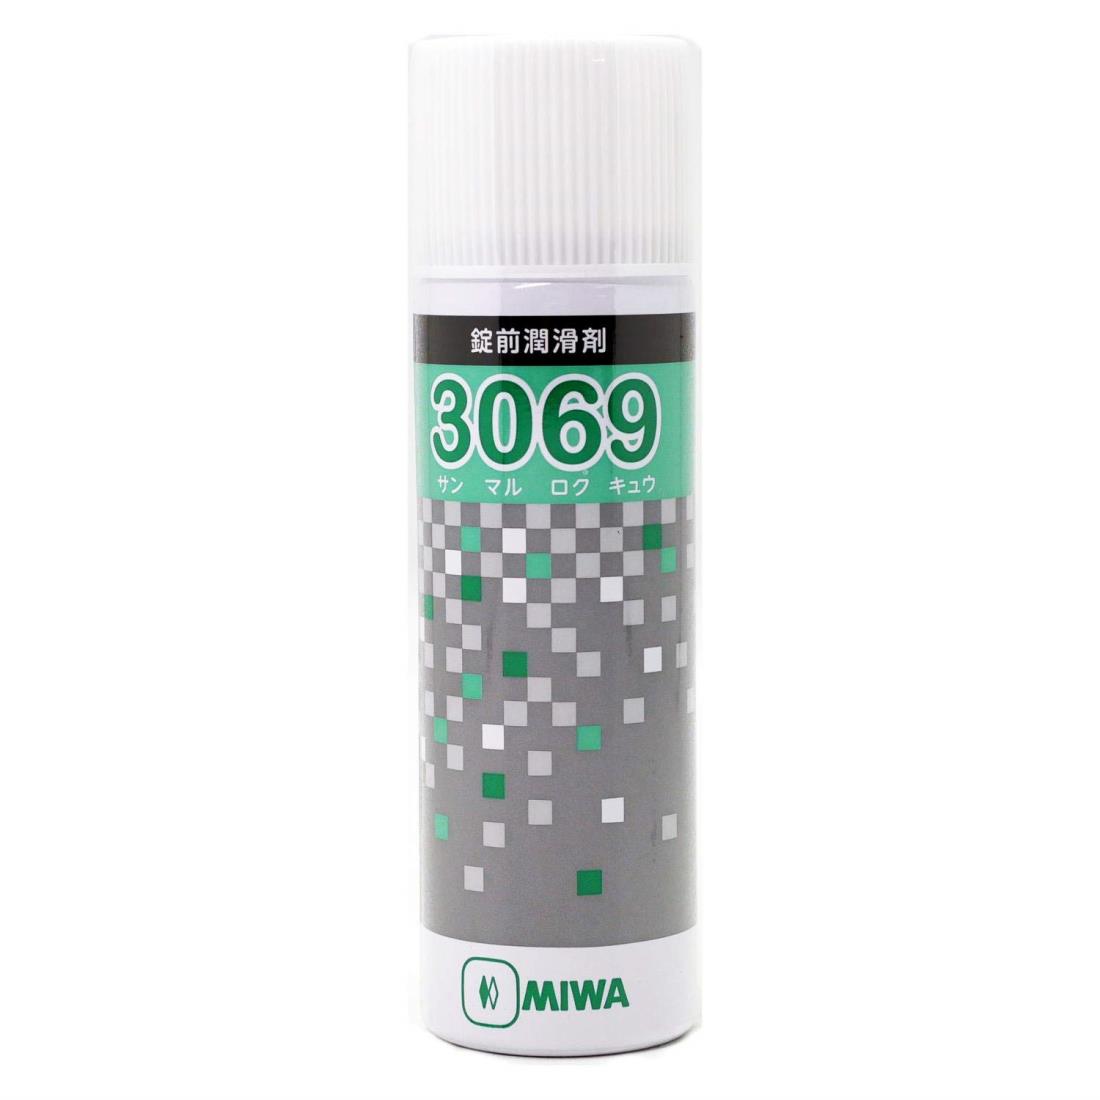 美和ロック(Miwalock) (MIWA) 純正 鍵穴専用潤滑剤 スプレー 3069 プロ仕様 70ml